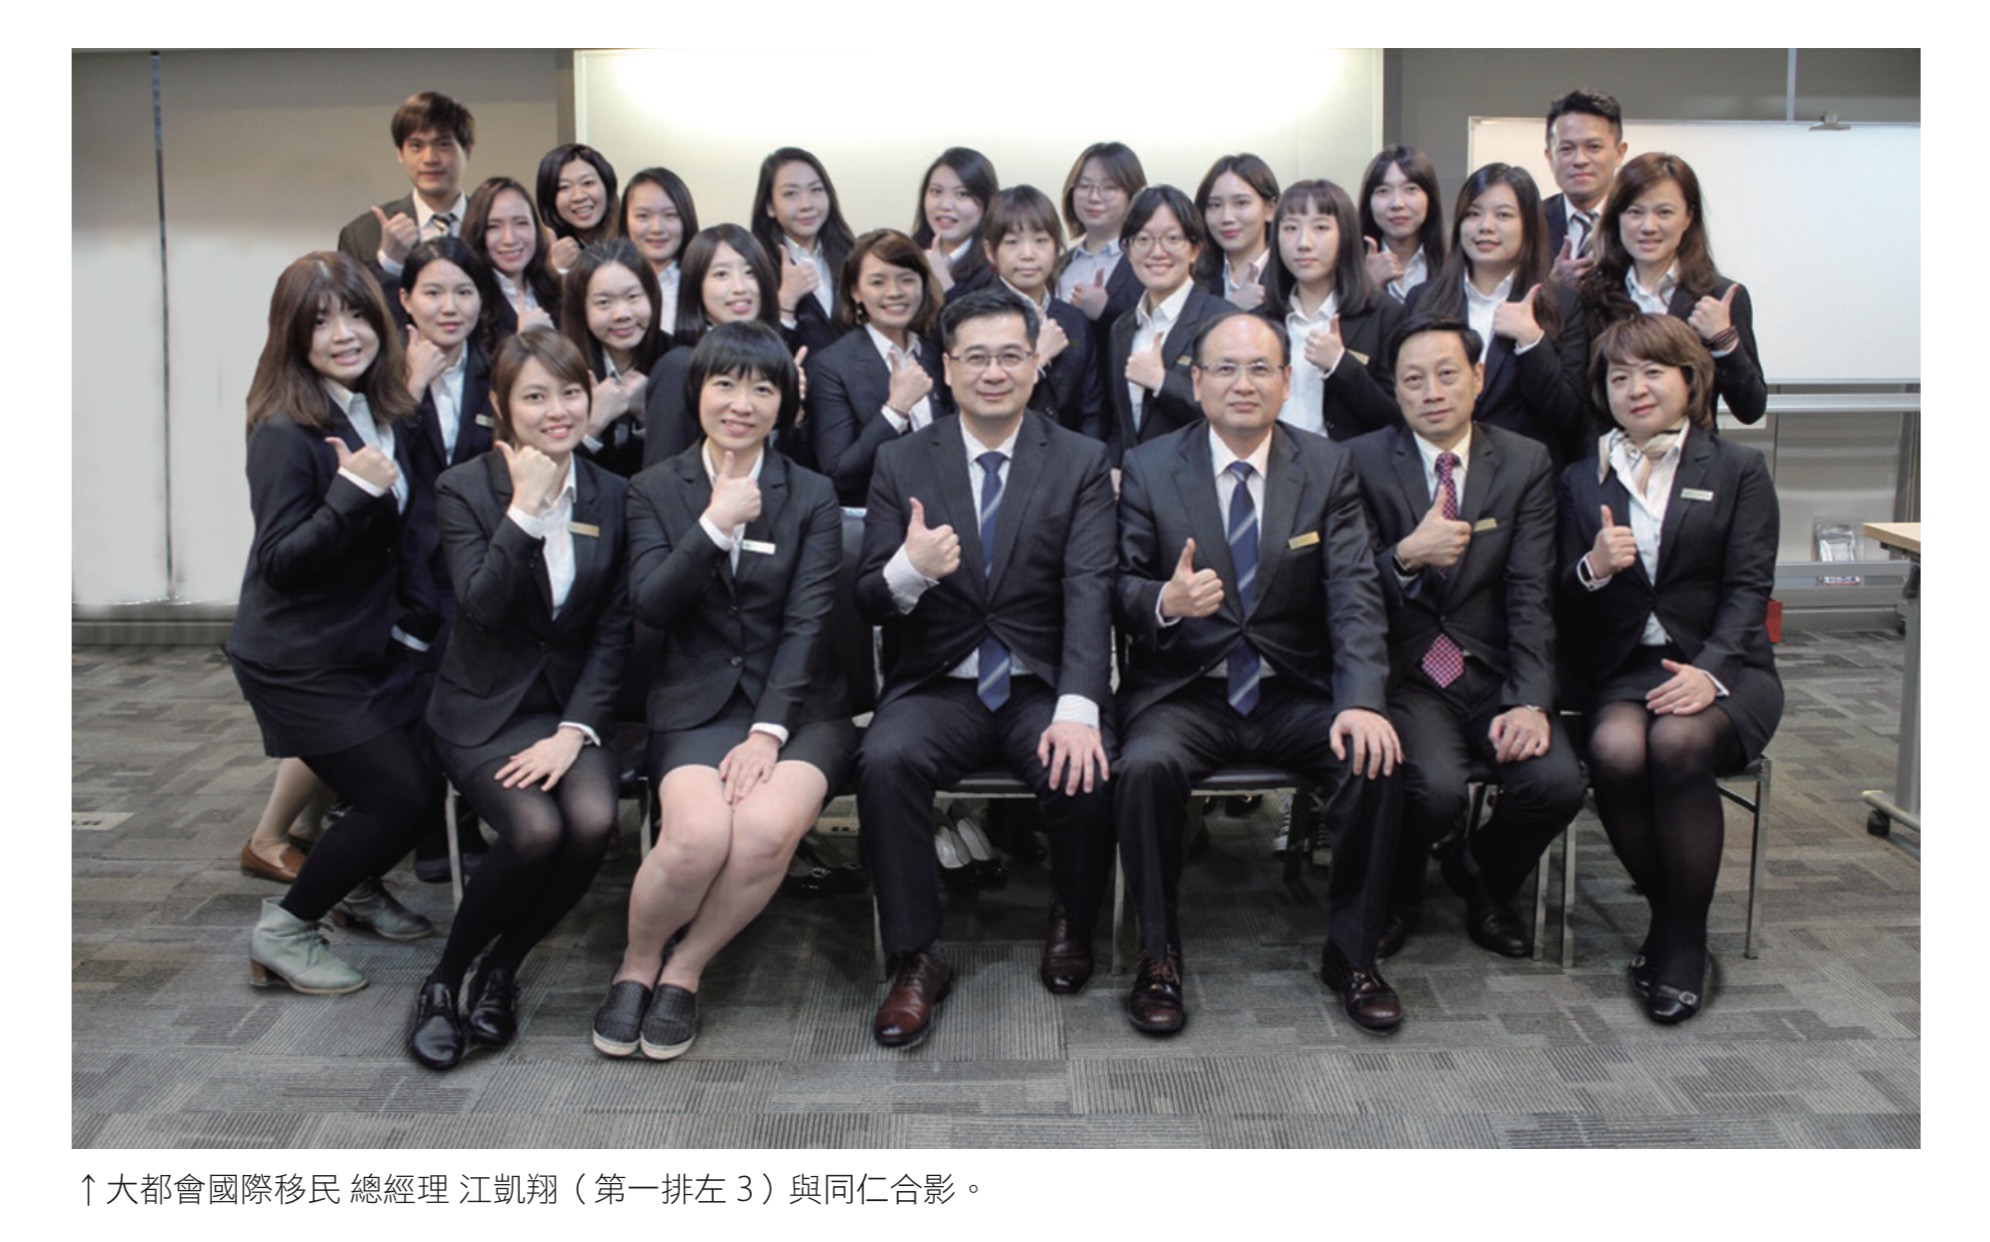 大都會國際移民 總經理 江凱翔(第一排左 3)與同仁合影